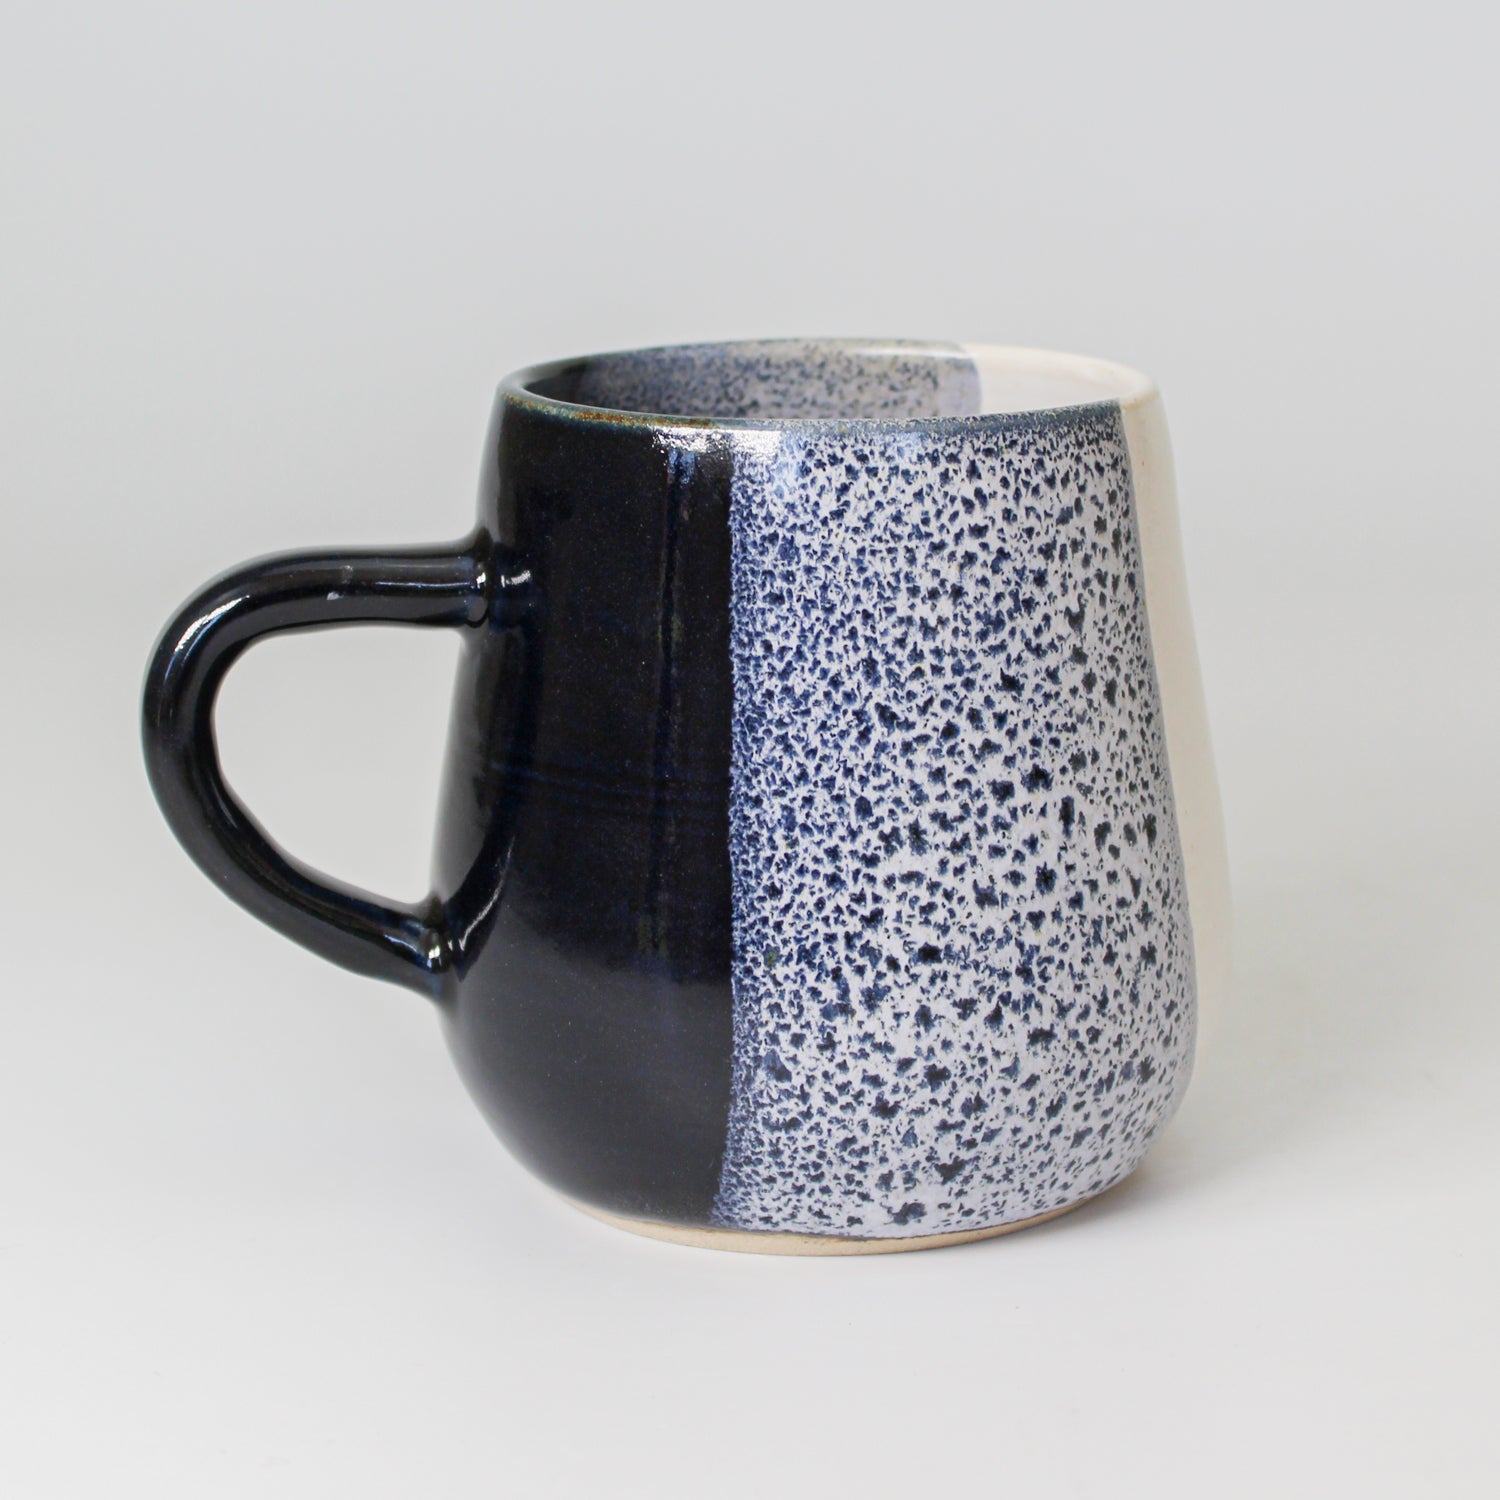 Japanese mug